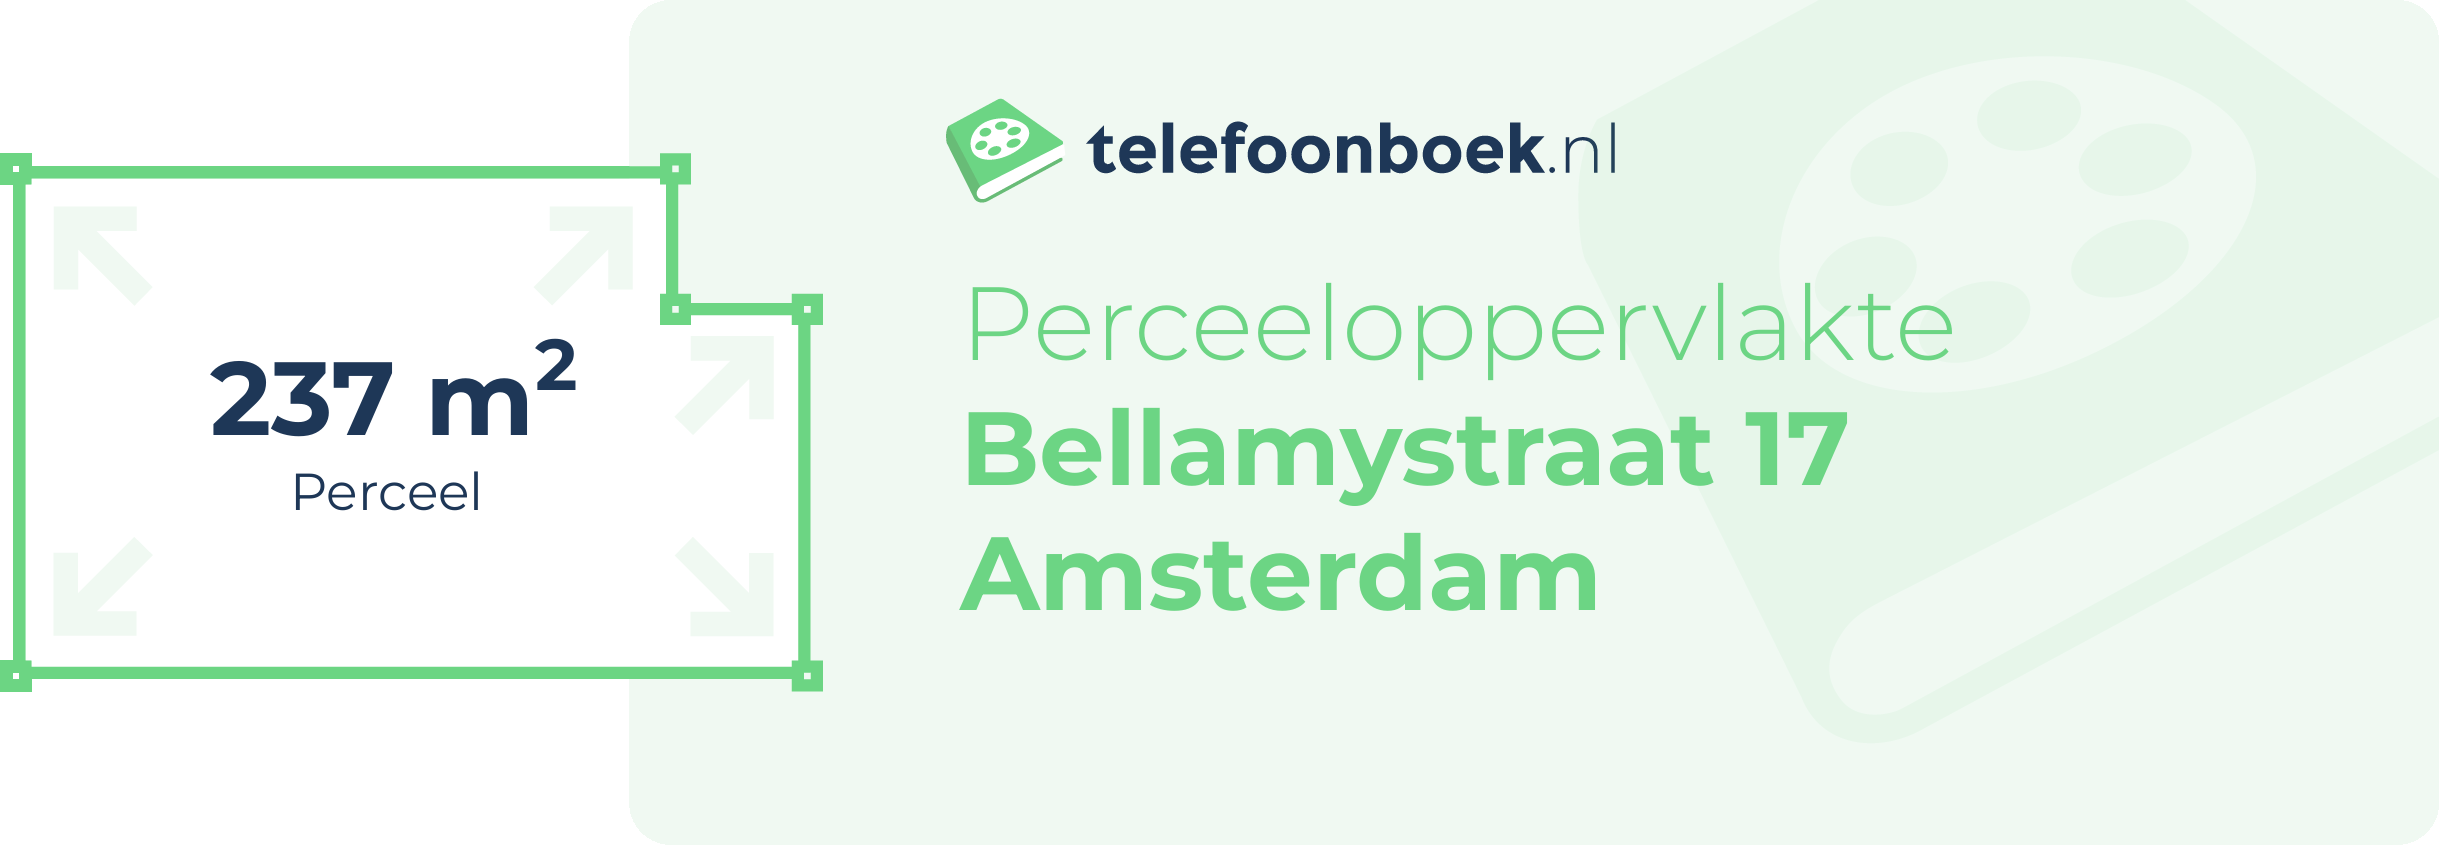 Perceeloppervlakte Bellamystraat 17 Amsterdam